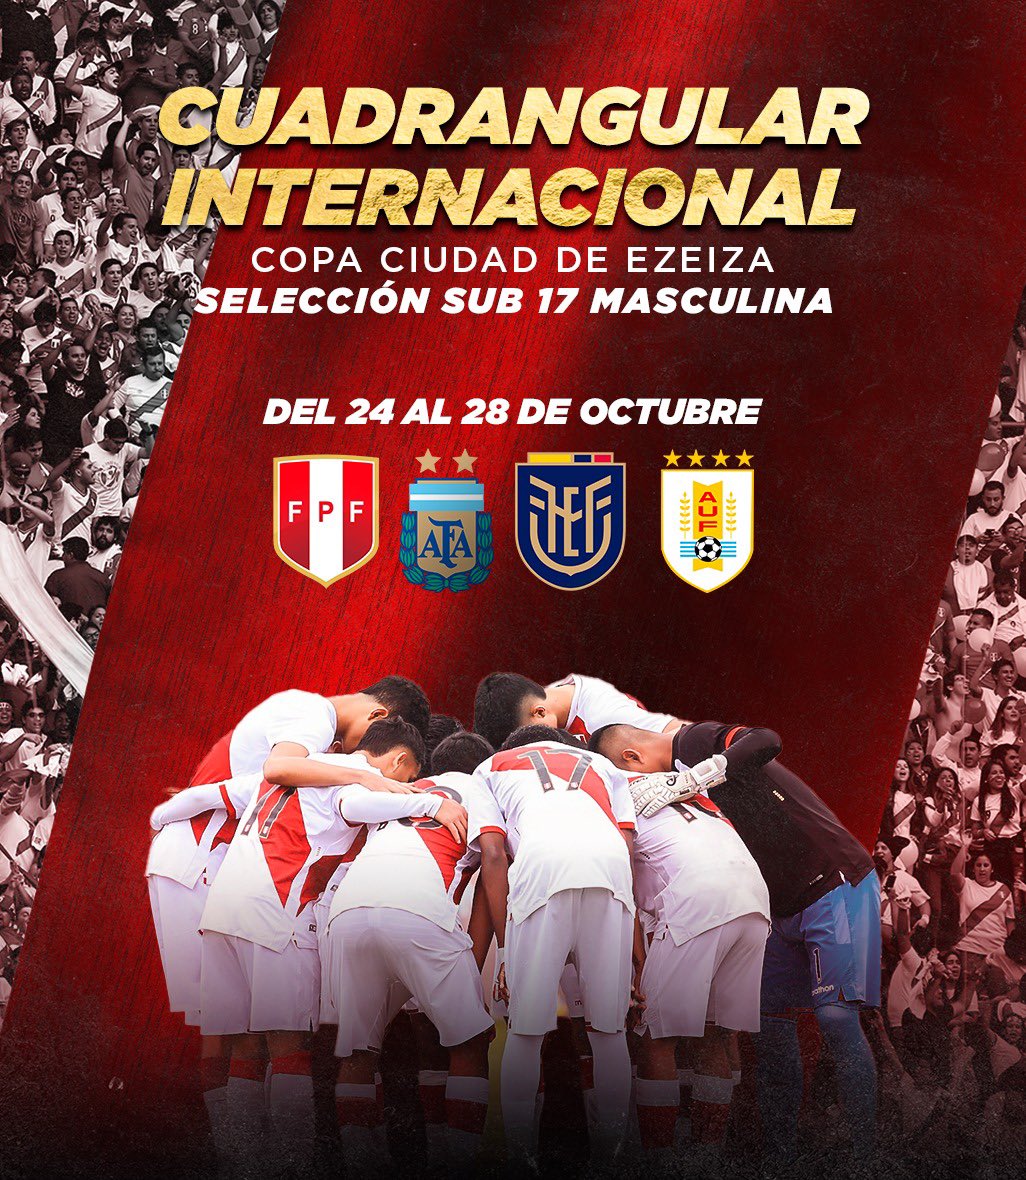 ¡Gira de preparación! 🙌🏻 Nuestra @SeleccionPeru Sub 17 🇵🇪 disputará el cuadrangular internacional Copa Ciudad de Ezeiza en Argentina 🇦🇷. #ArribaPerú 💪🏻